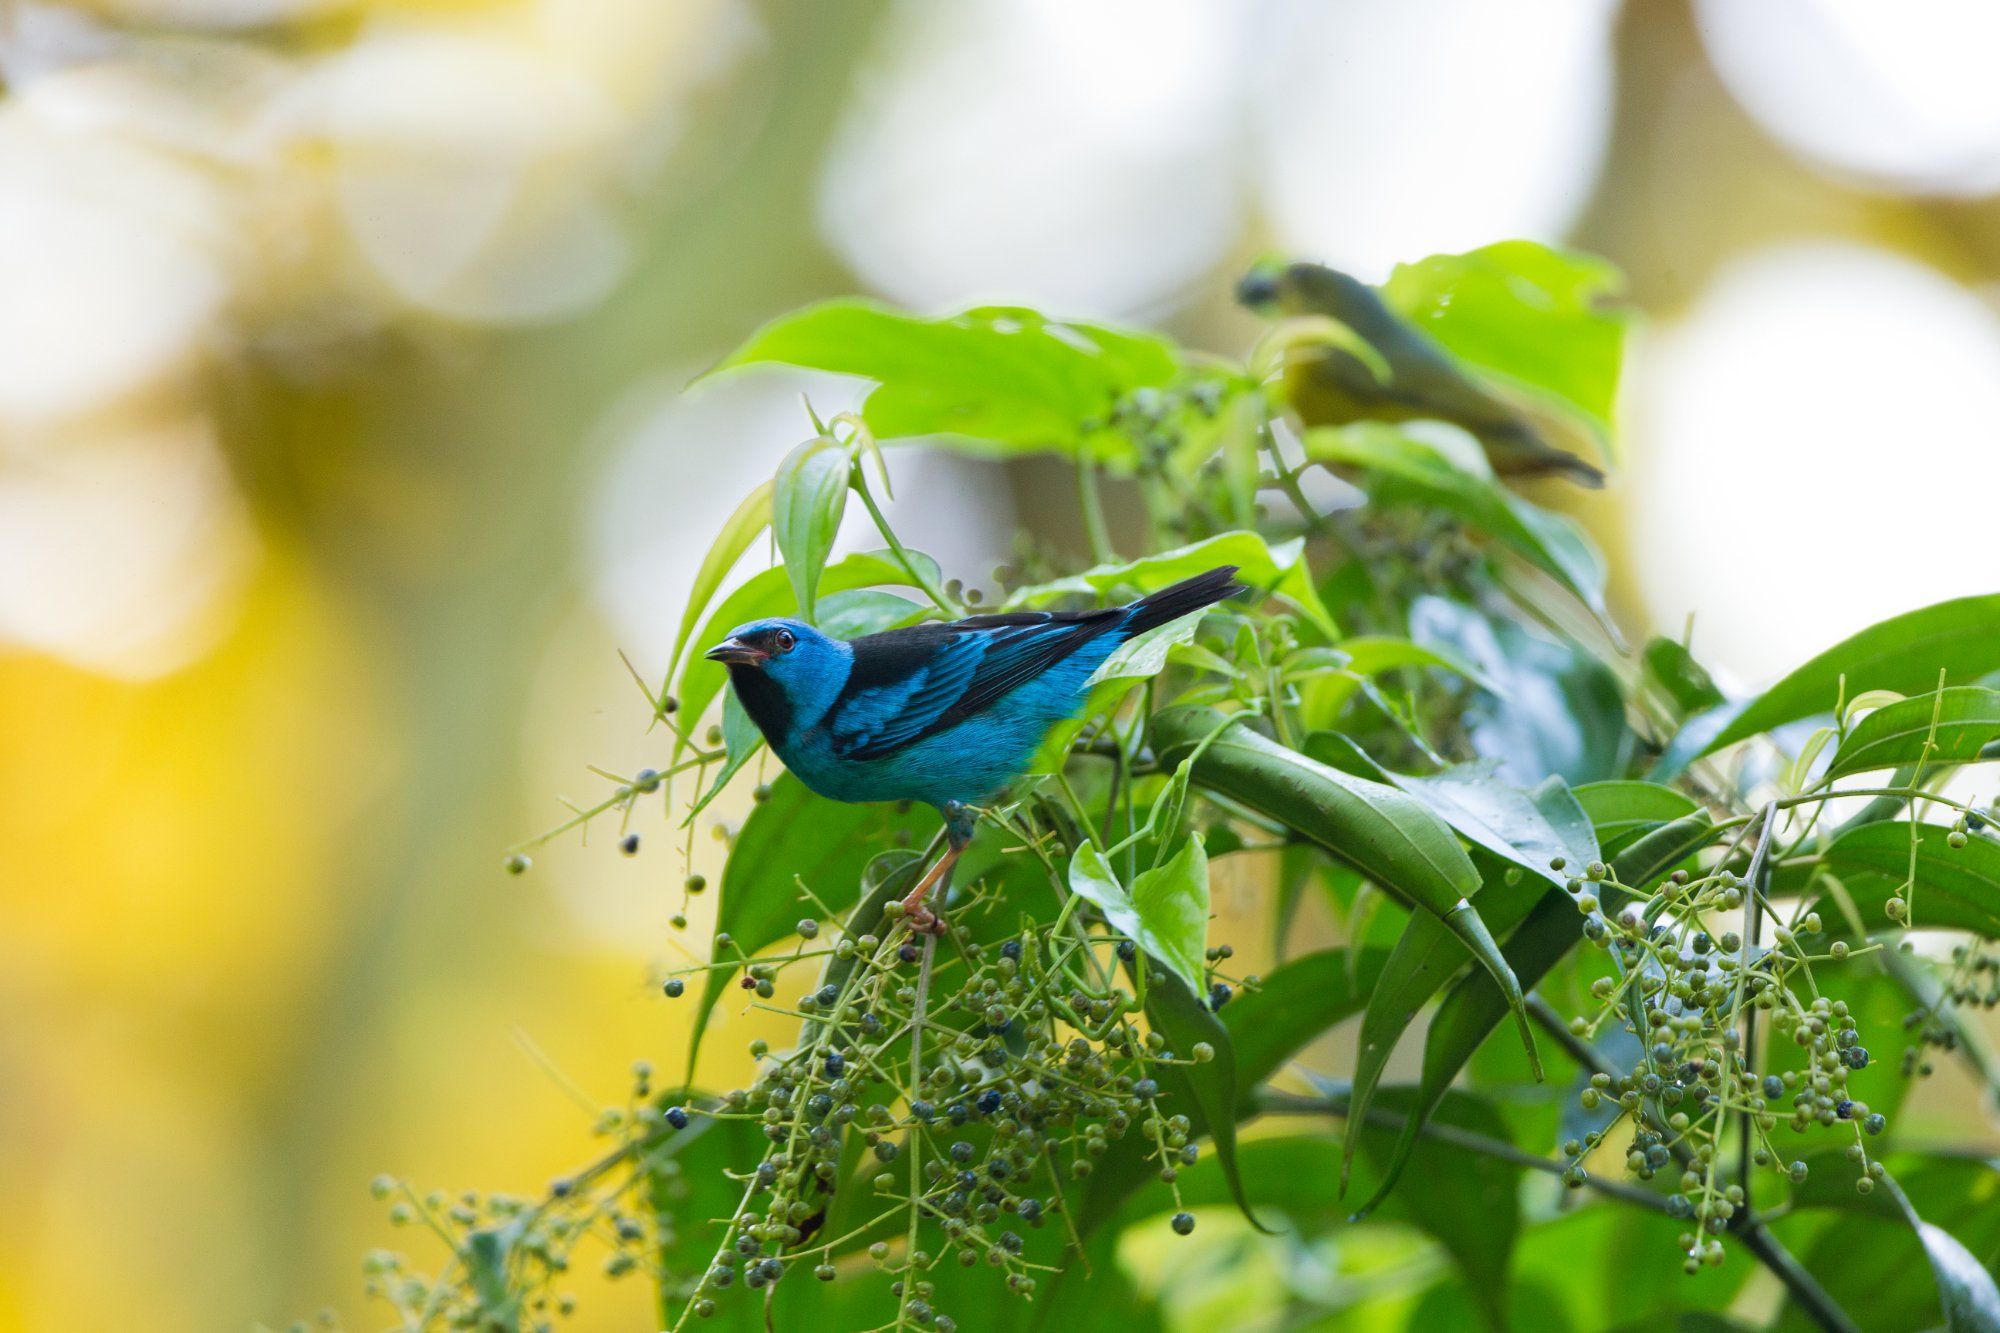 blue bird on a green branch